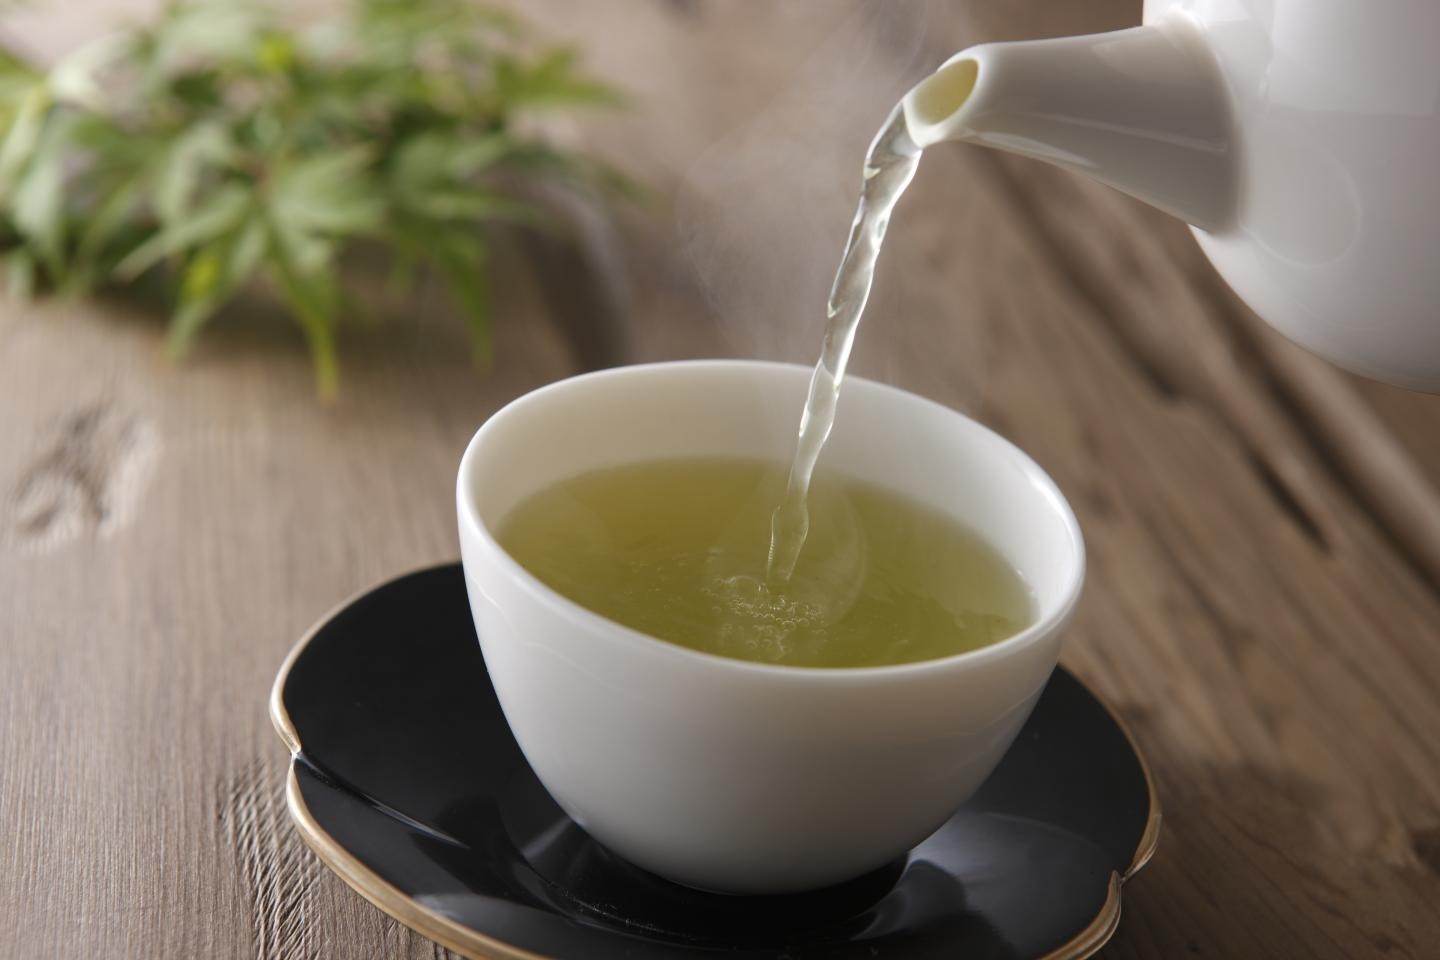 Los participantes de la investigación tomaron té verde durante 18 meses debido a los componentes nutritivos que aporta
